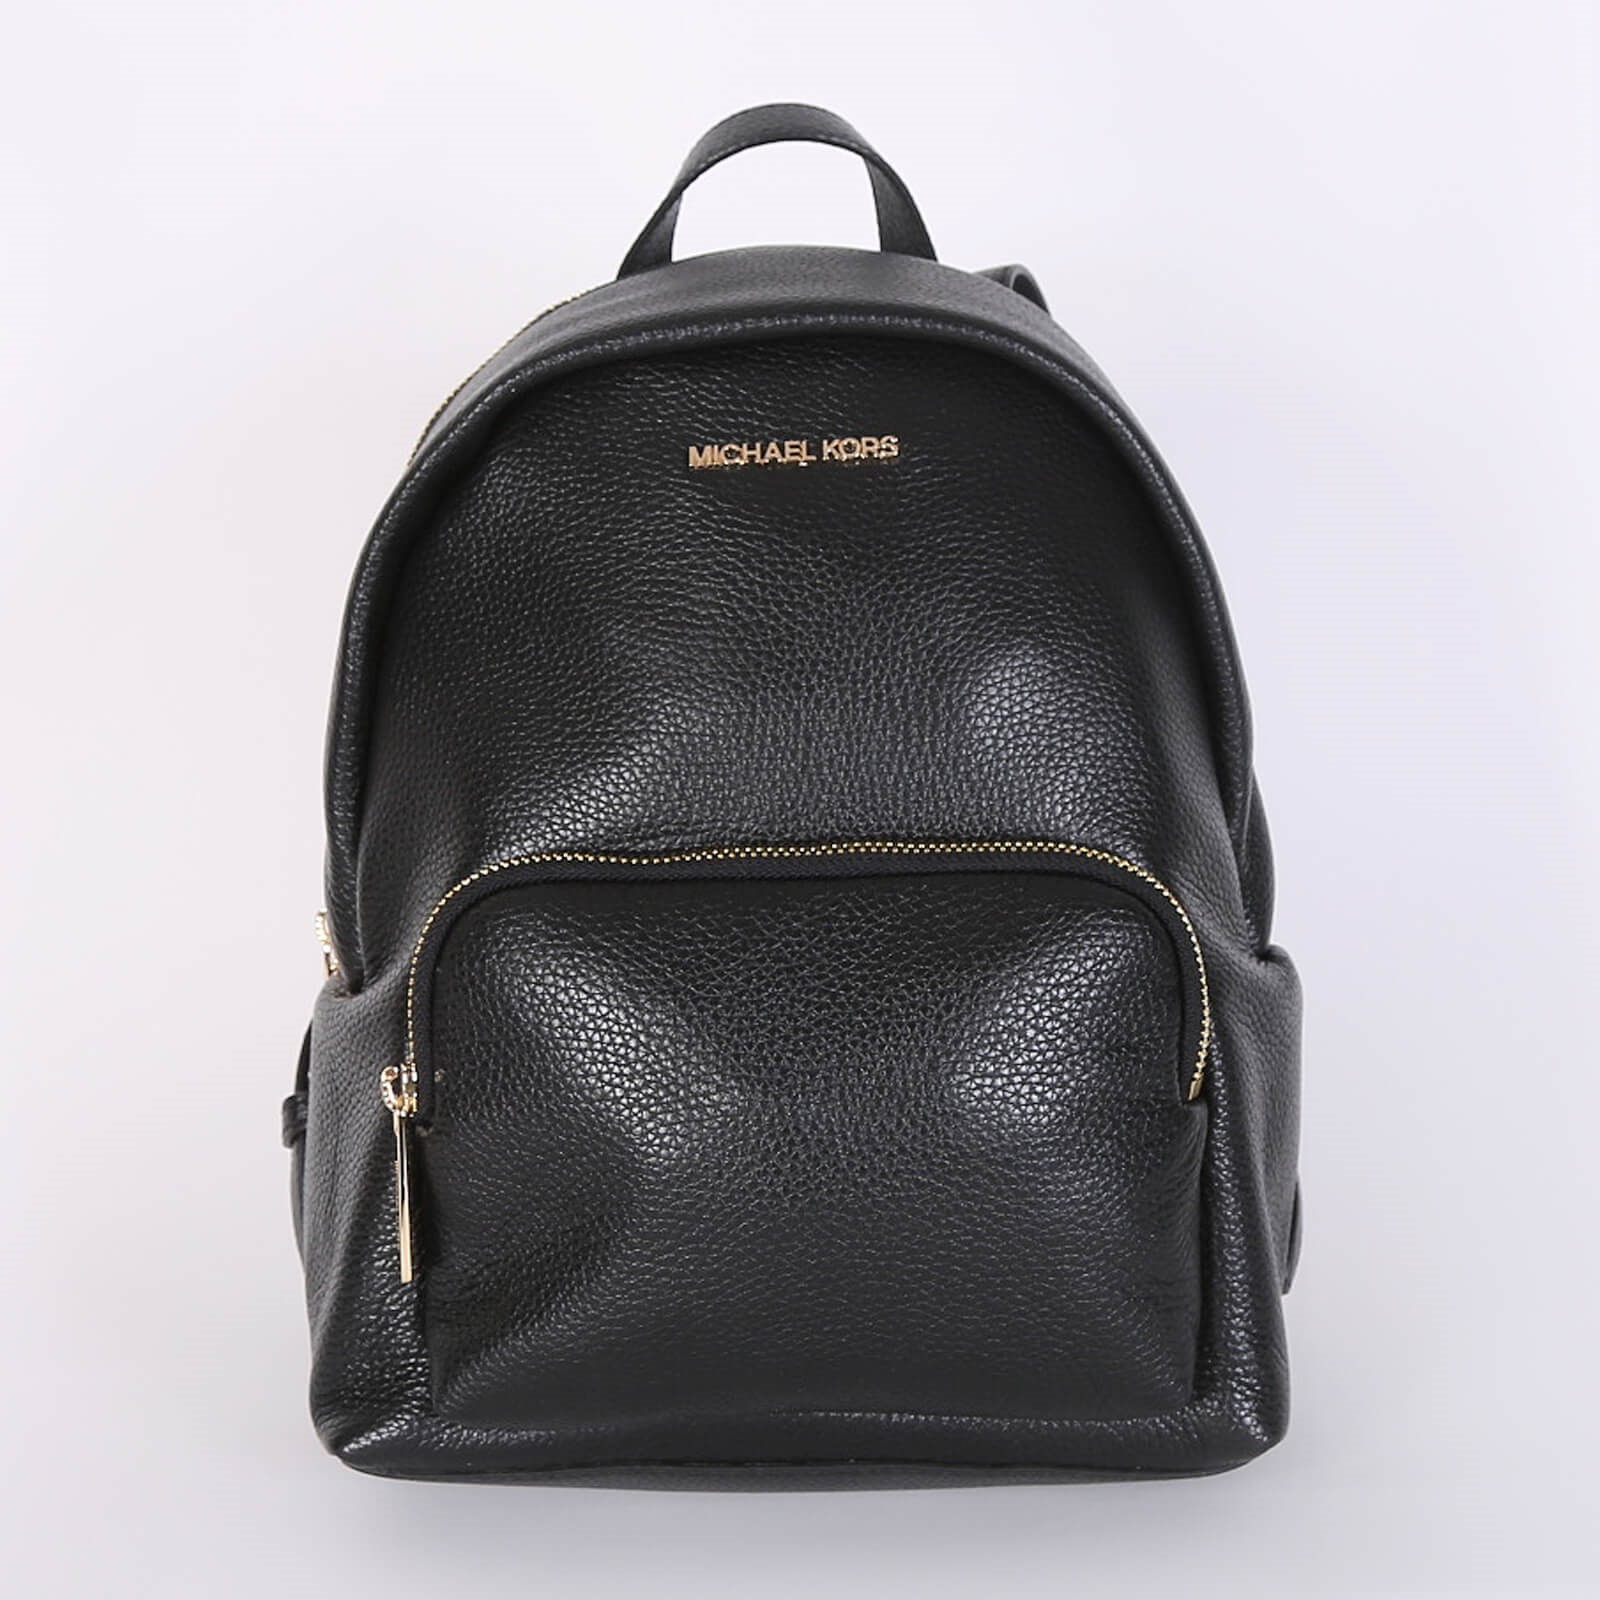 Michael Kors designer Set Item medium Leather Backpack Black with front  pocket | eBay